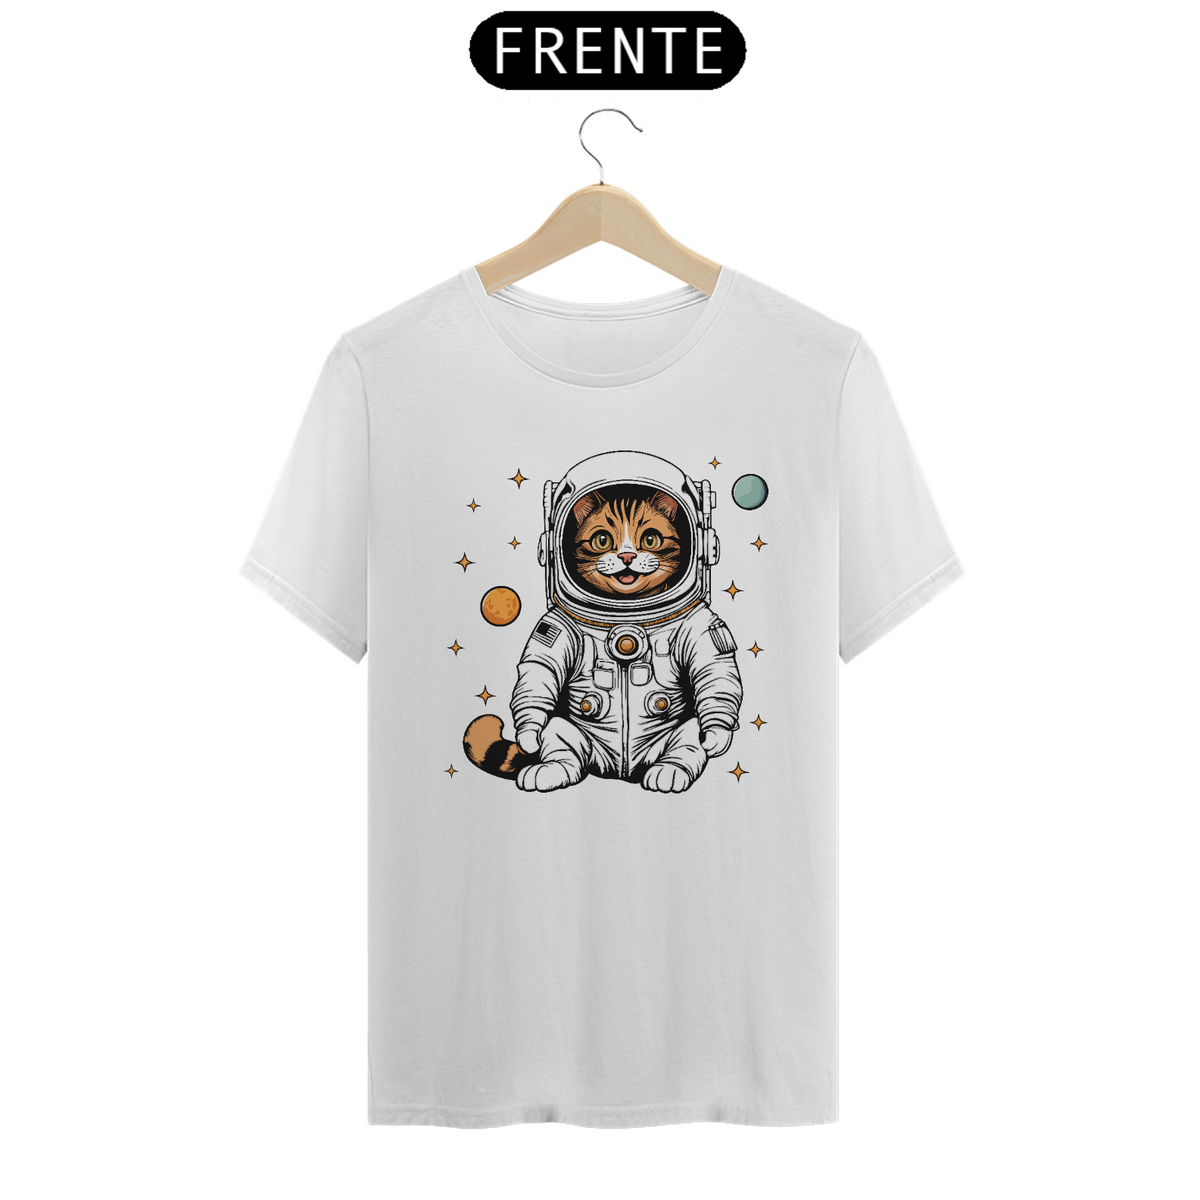 Nome do produto: Space Cat